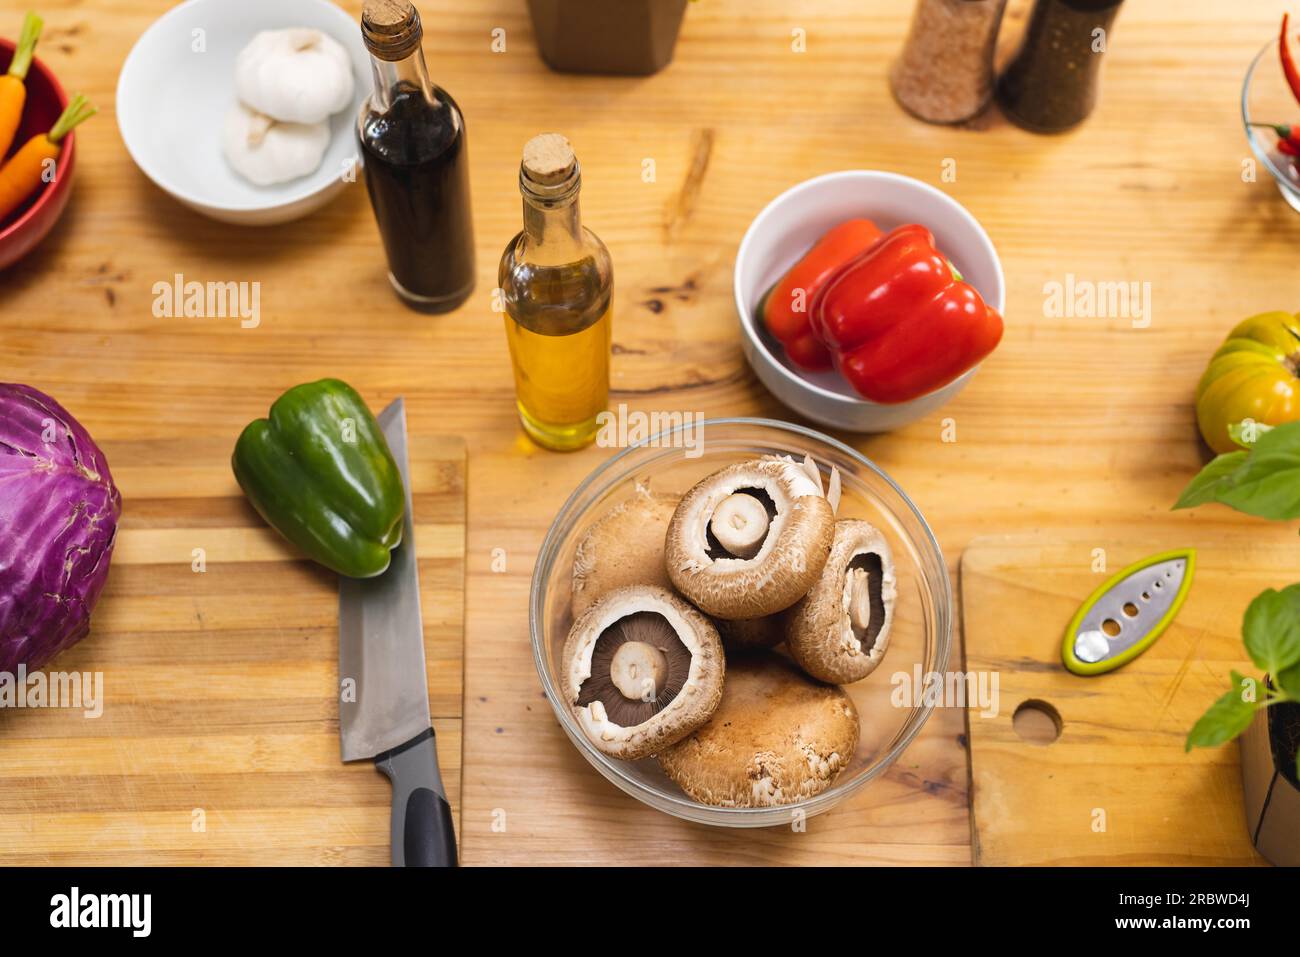 Vue aérienne de légumes, champignons et épices dans la cuisine Banque D'Images